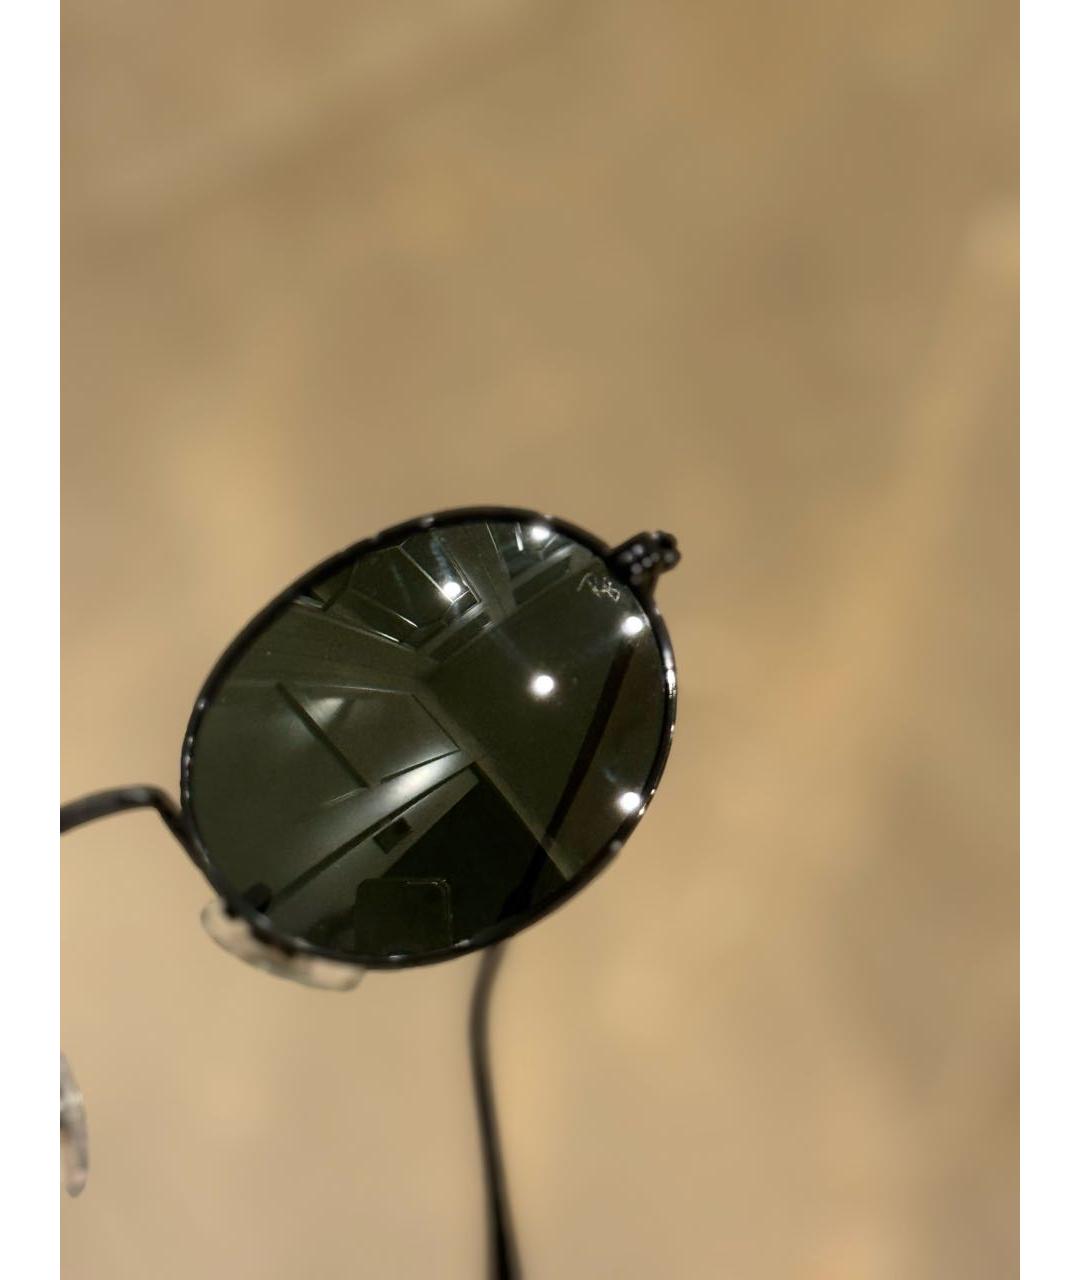 RAY BAN Черные металлические солнцезащитные очки, фото 7